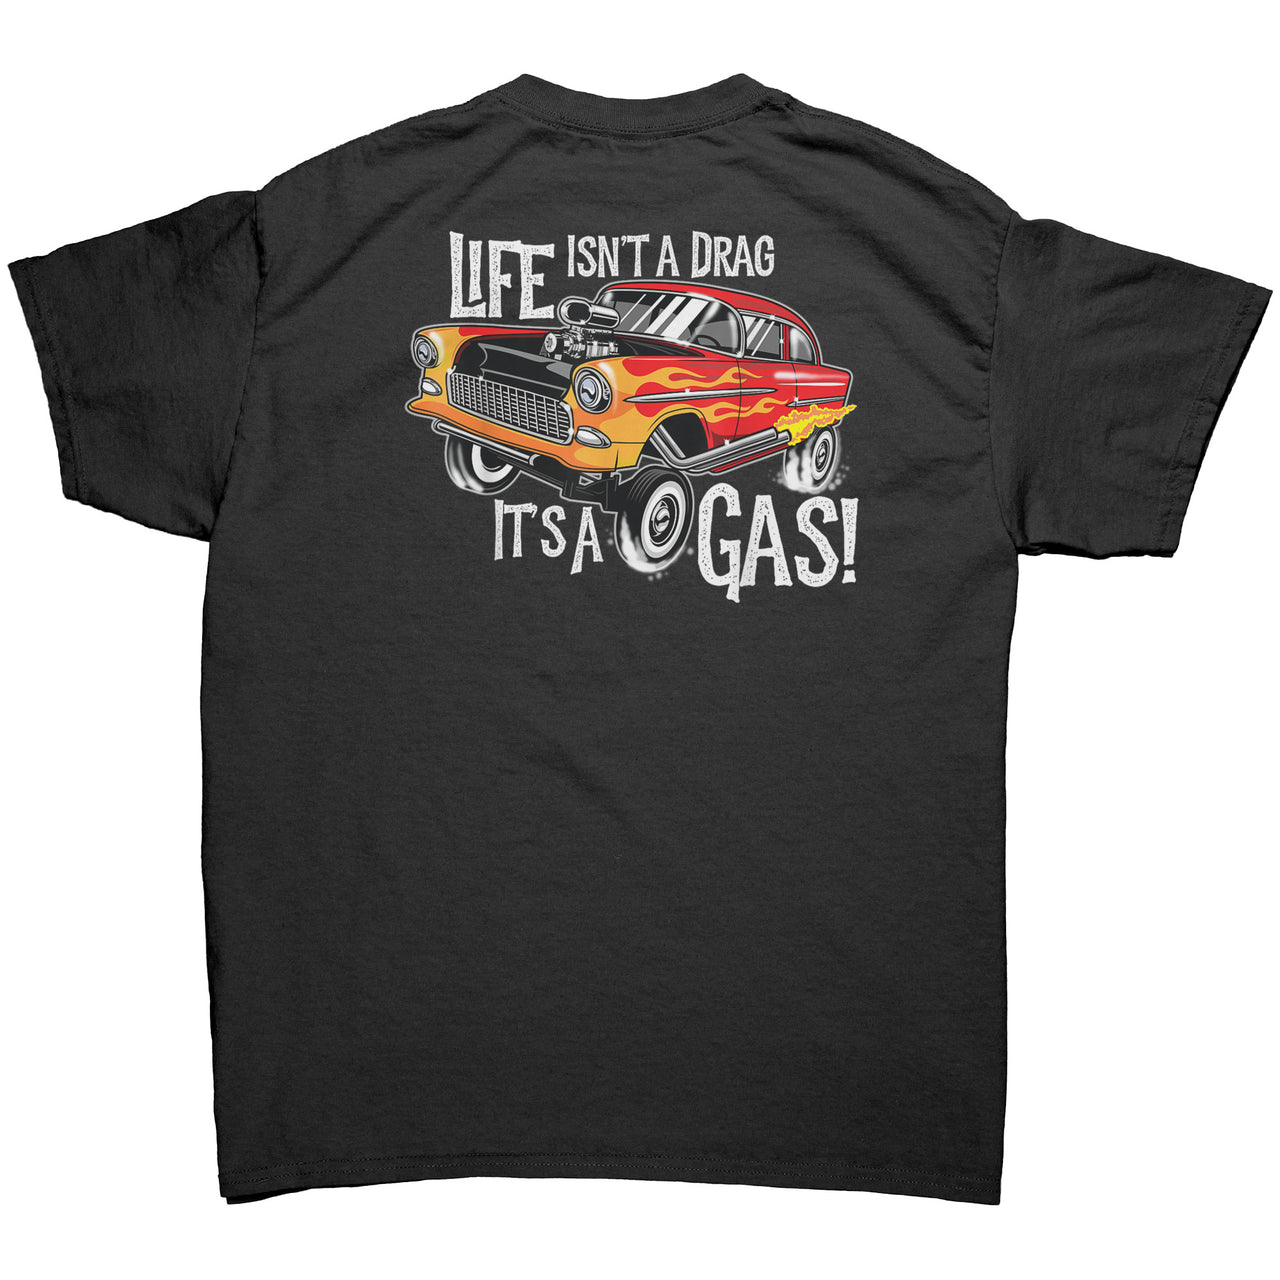 Life Isn't a drag  It's a gas  Men's T-Shirt